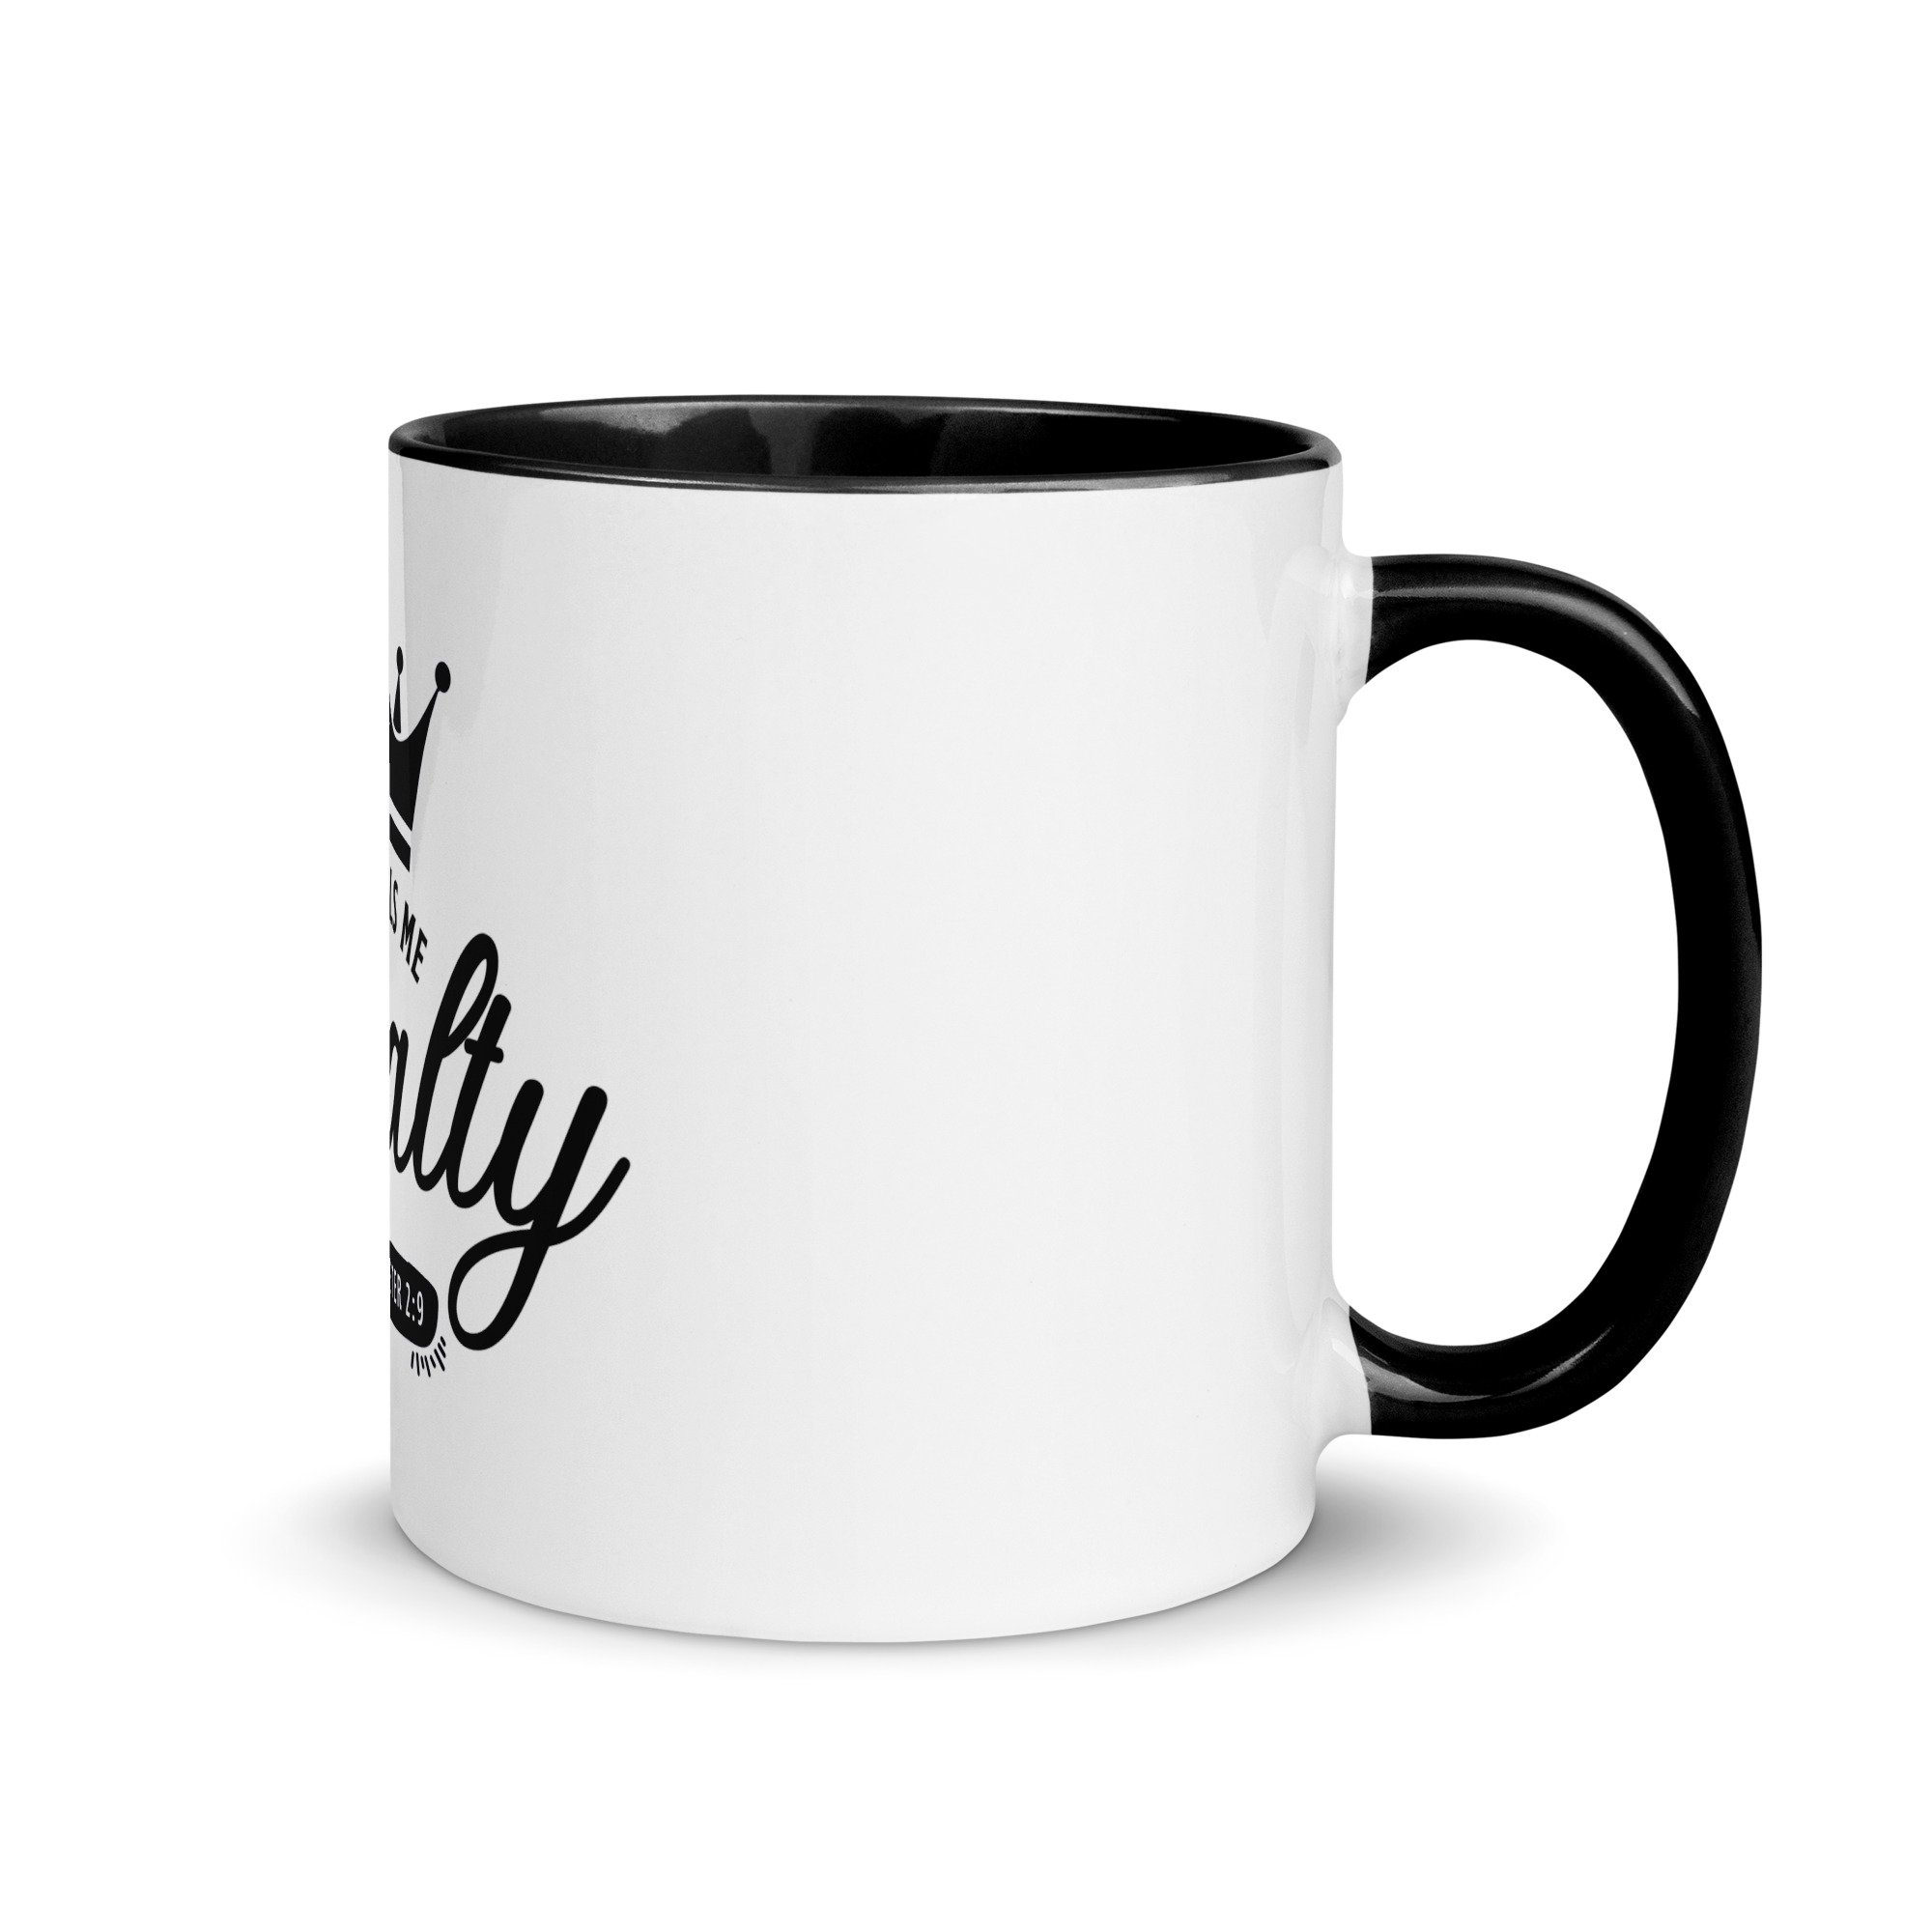 11 oz mug - God over all, yet God with me